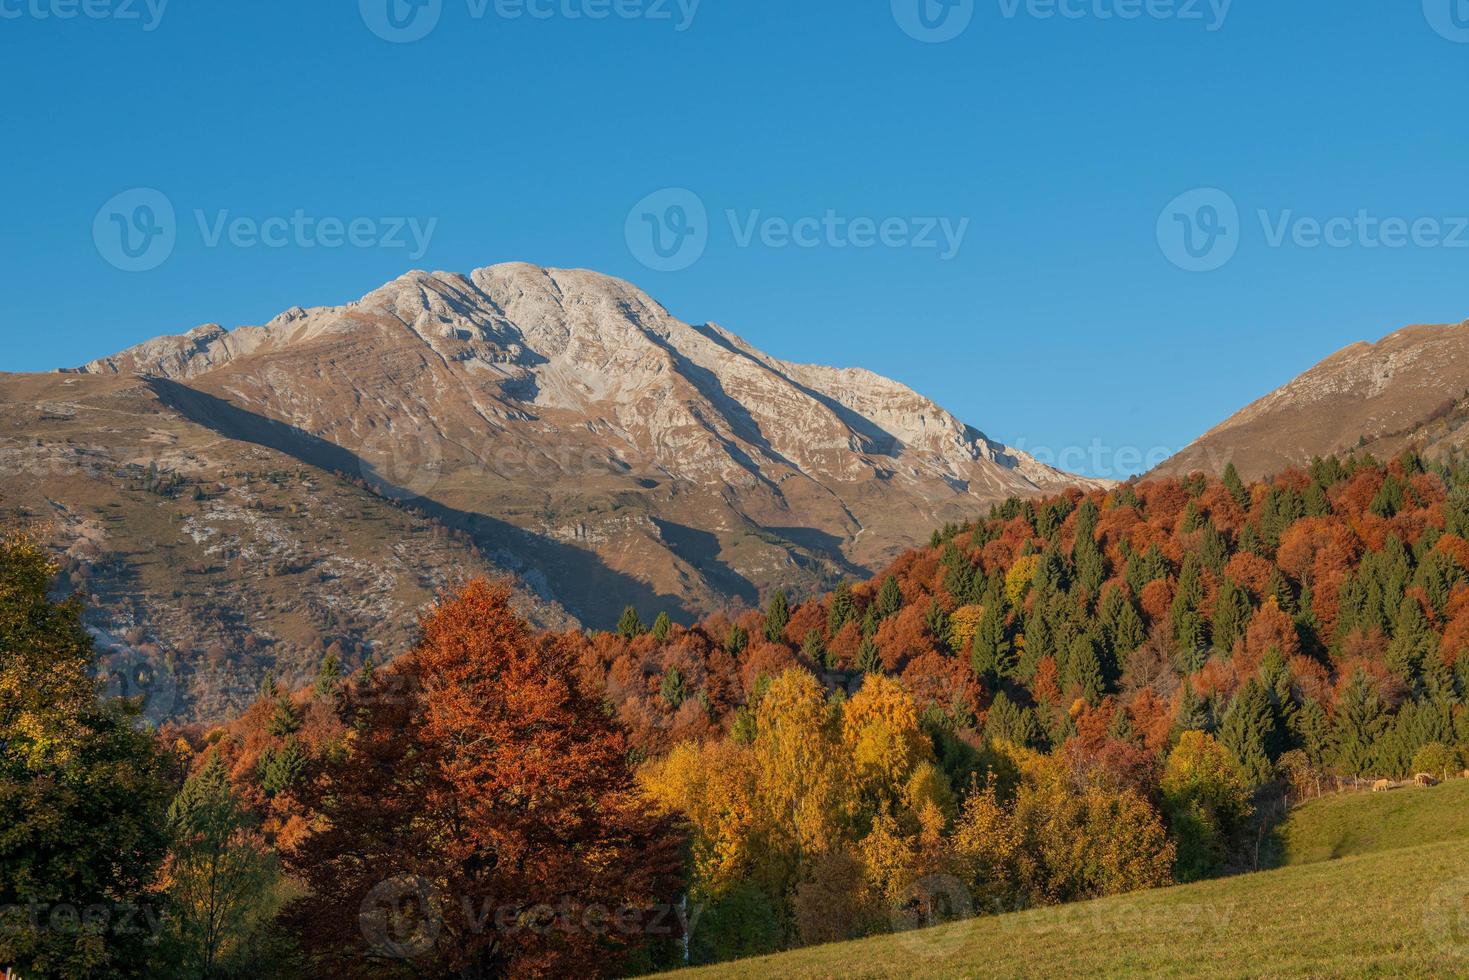 alberi in autunno con picco di montagna foto